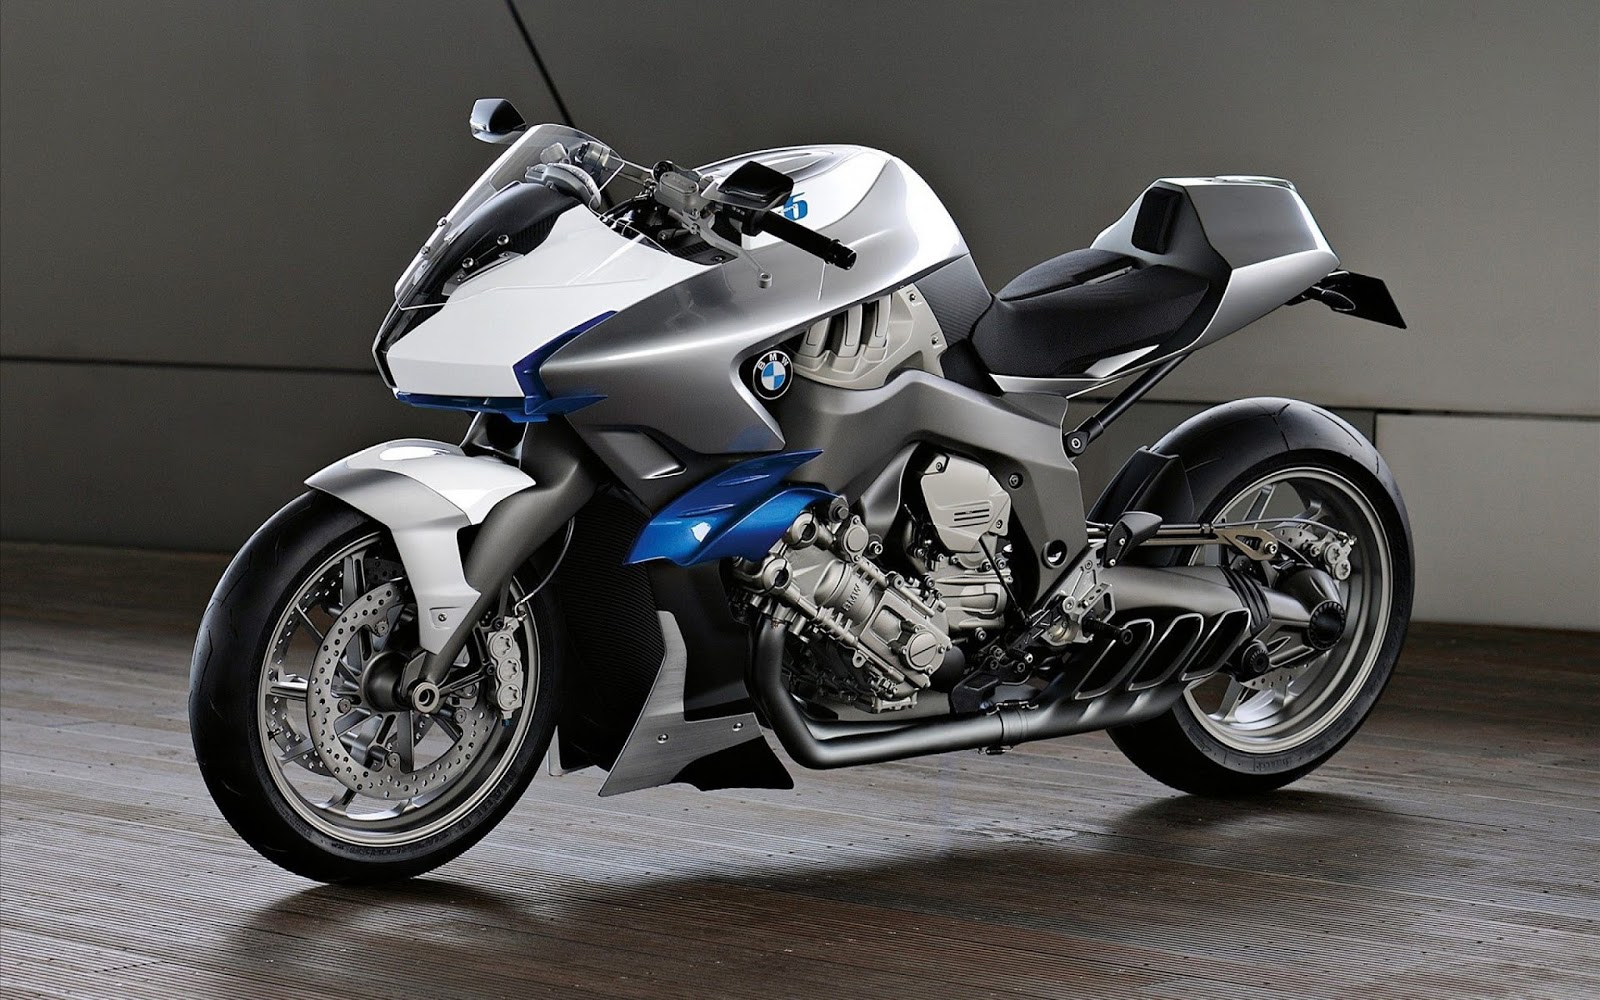 Tổng hợp hình nền xe môtô đẹp nhất  siêu moto Full HD cho máy tính  VFOVN